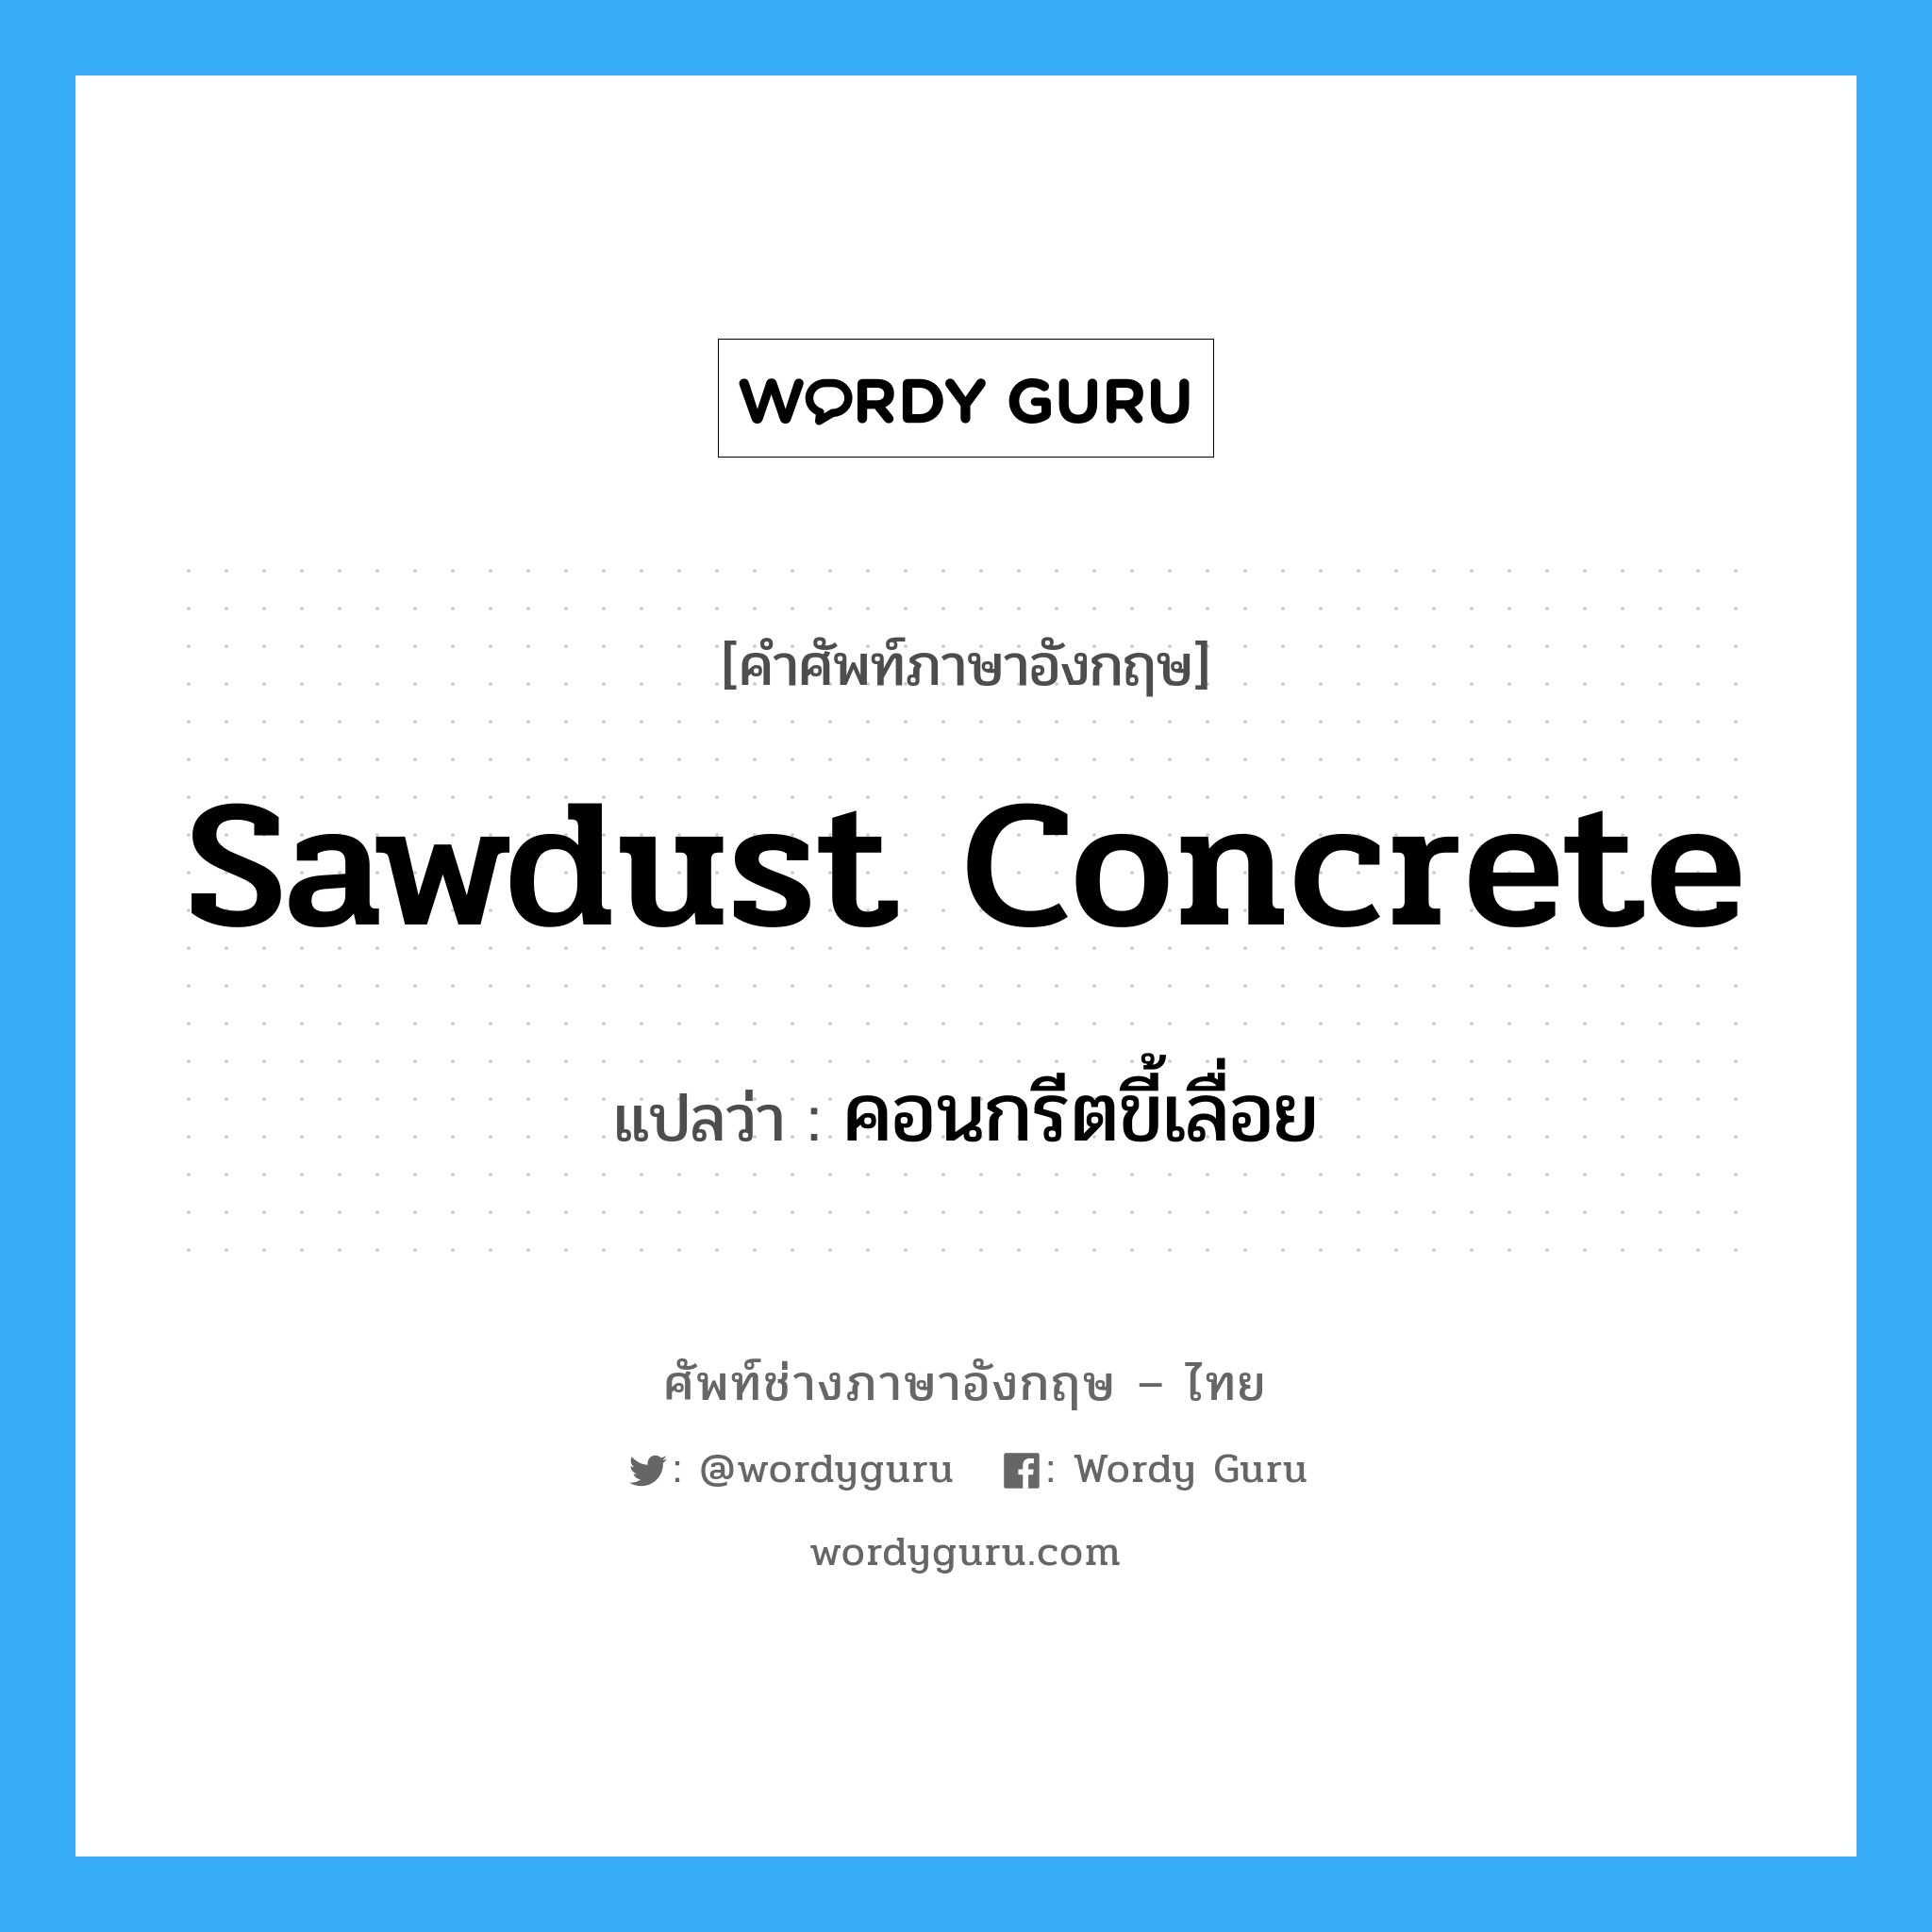 คอนกรีตขี้เลื่อย ภาษาอังกฤษ?, คำศัพท์ช่างภาษาอังกฤษ - ไทย คอนกรีตขี้เลื่อย คำศัพท์ภาษาอังกฤษ คอนกรีตขี้เลื่อย แปลว่า sawdust concrete